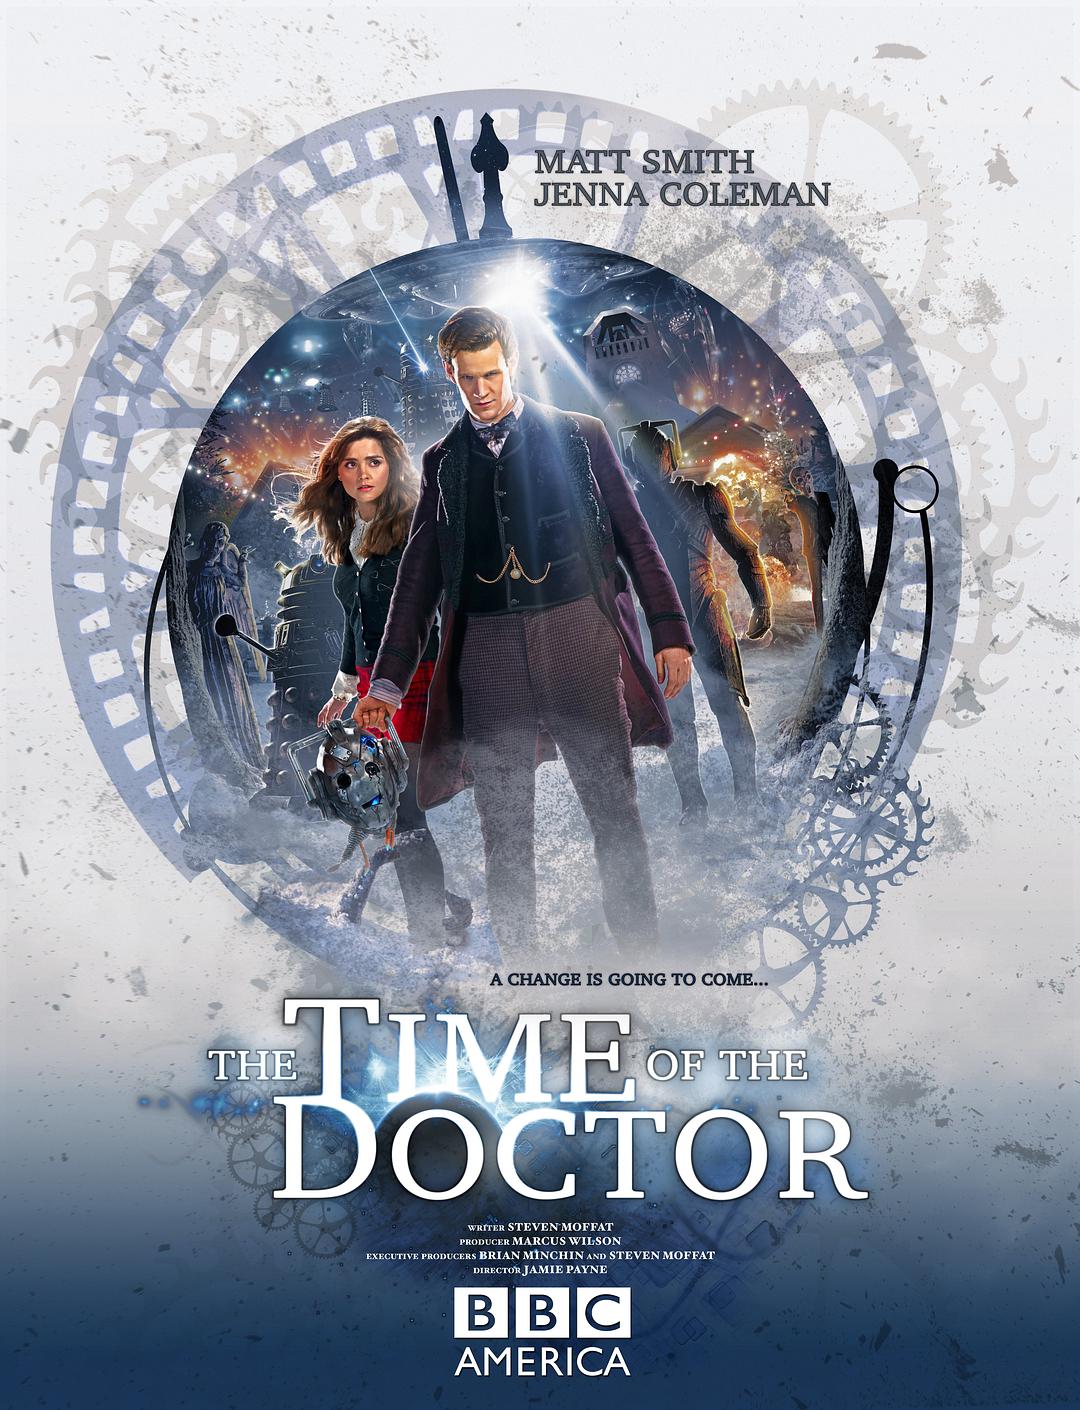 奥秘博士:博士之时 Doctor.Who.The.Time.of.the.Doctor.2013.1080p.BluRay.x264-SADPANDA 6.56GB-1.png